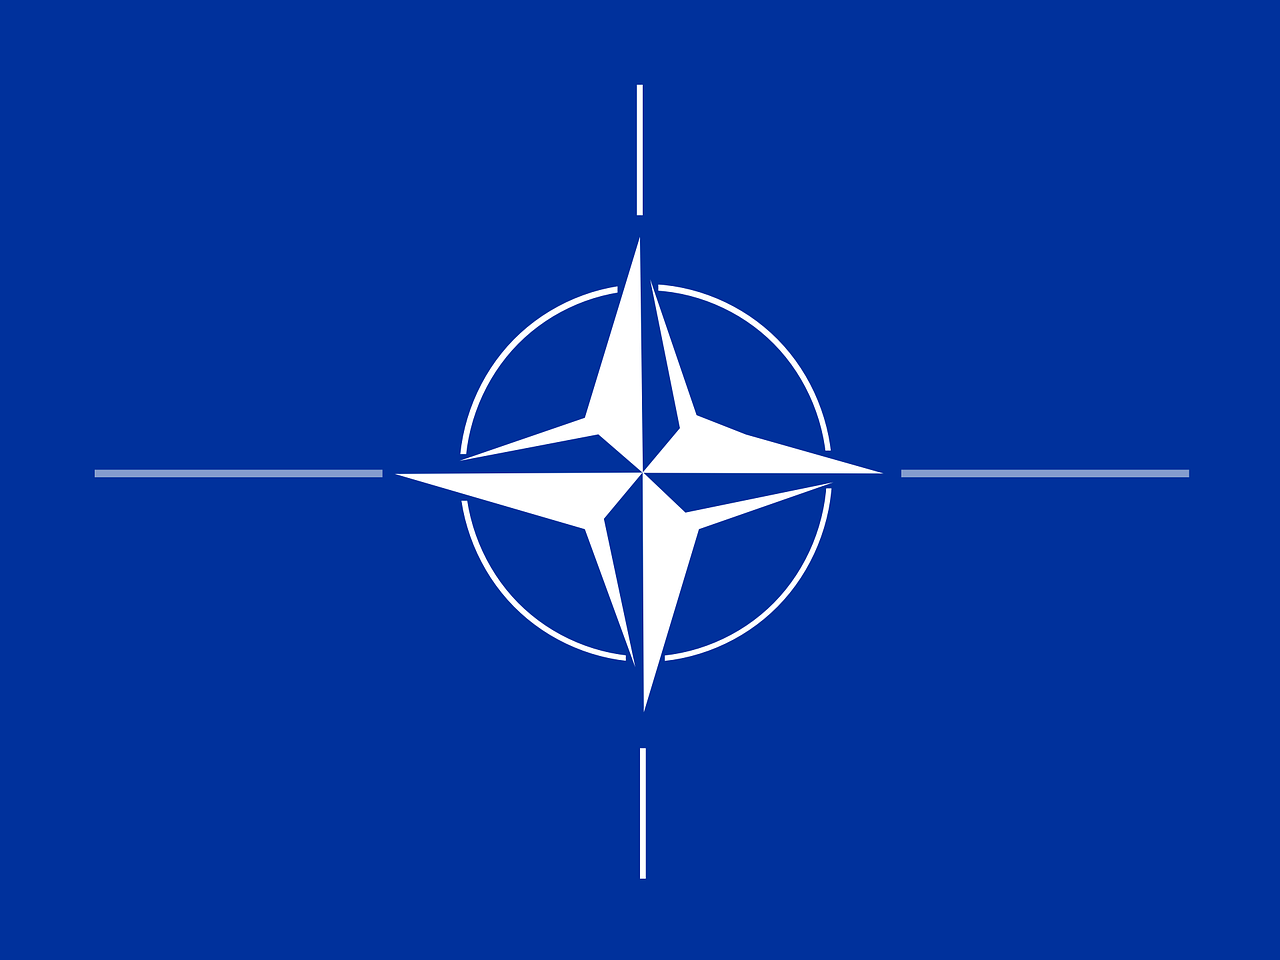 A NATO-nak hosszú távra kell vállalnia Ukrajna támogatását